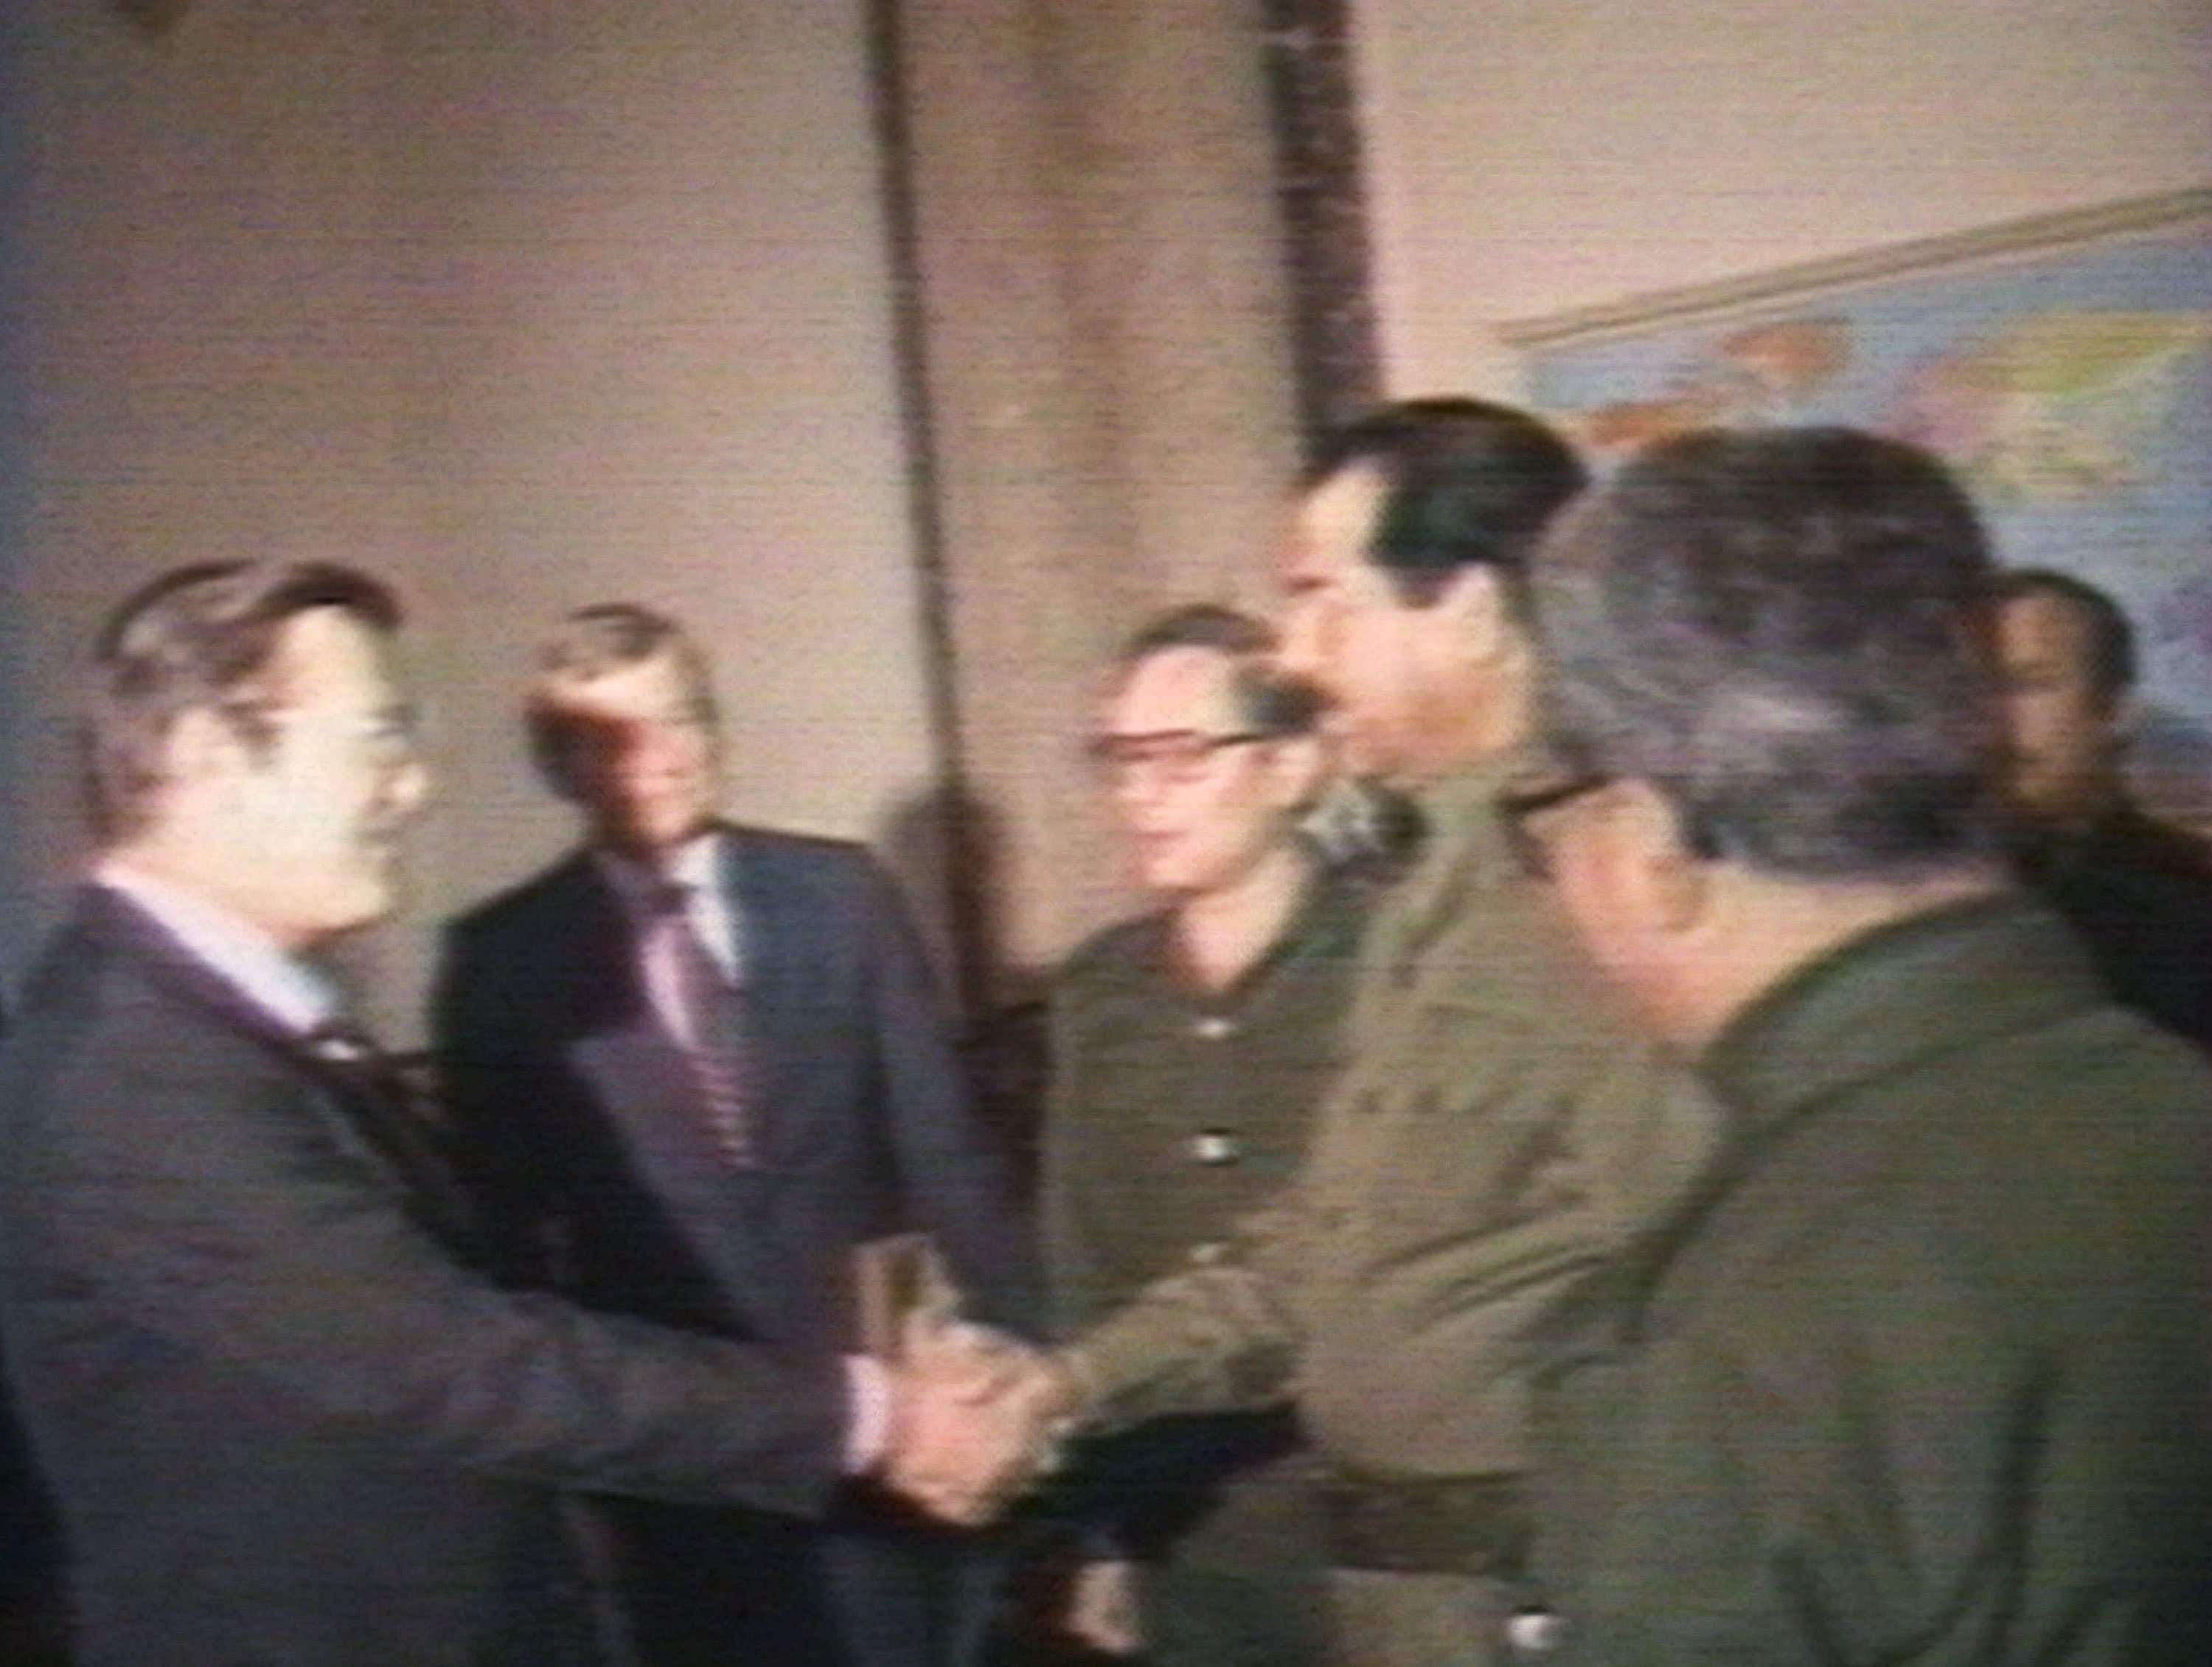 Donald Rumsfeld Meets Saddam Hussein In 1983